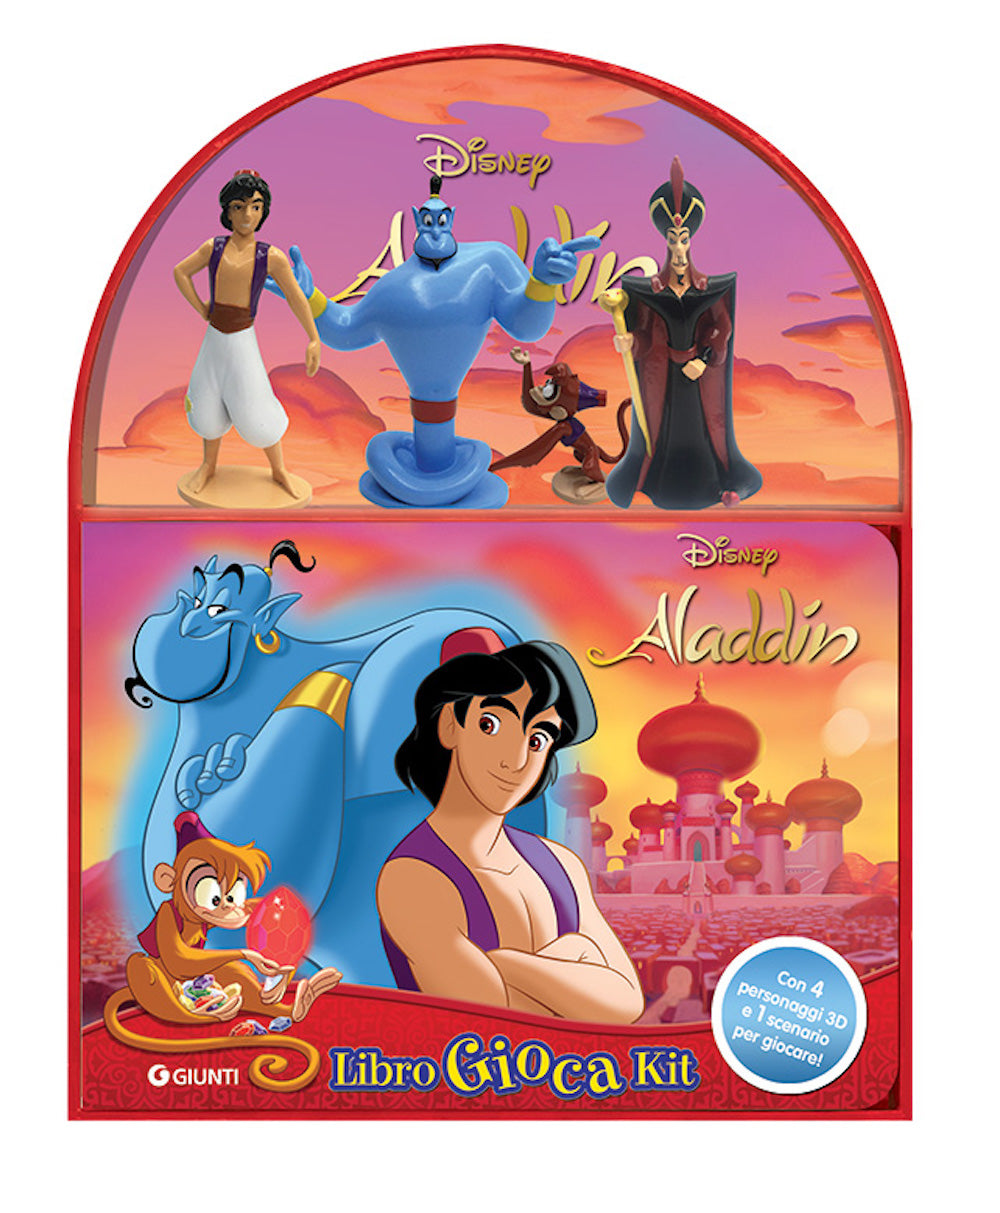 Aladdin - LibroGiocaKit